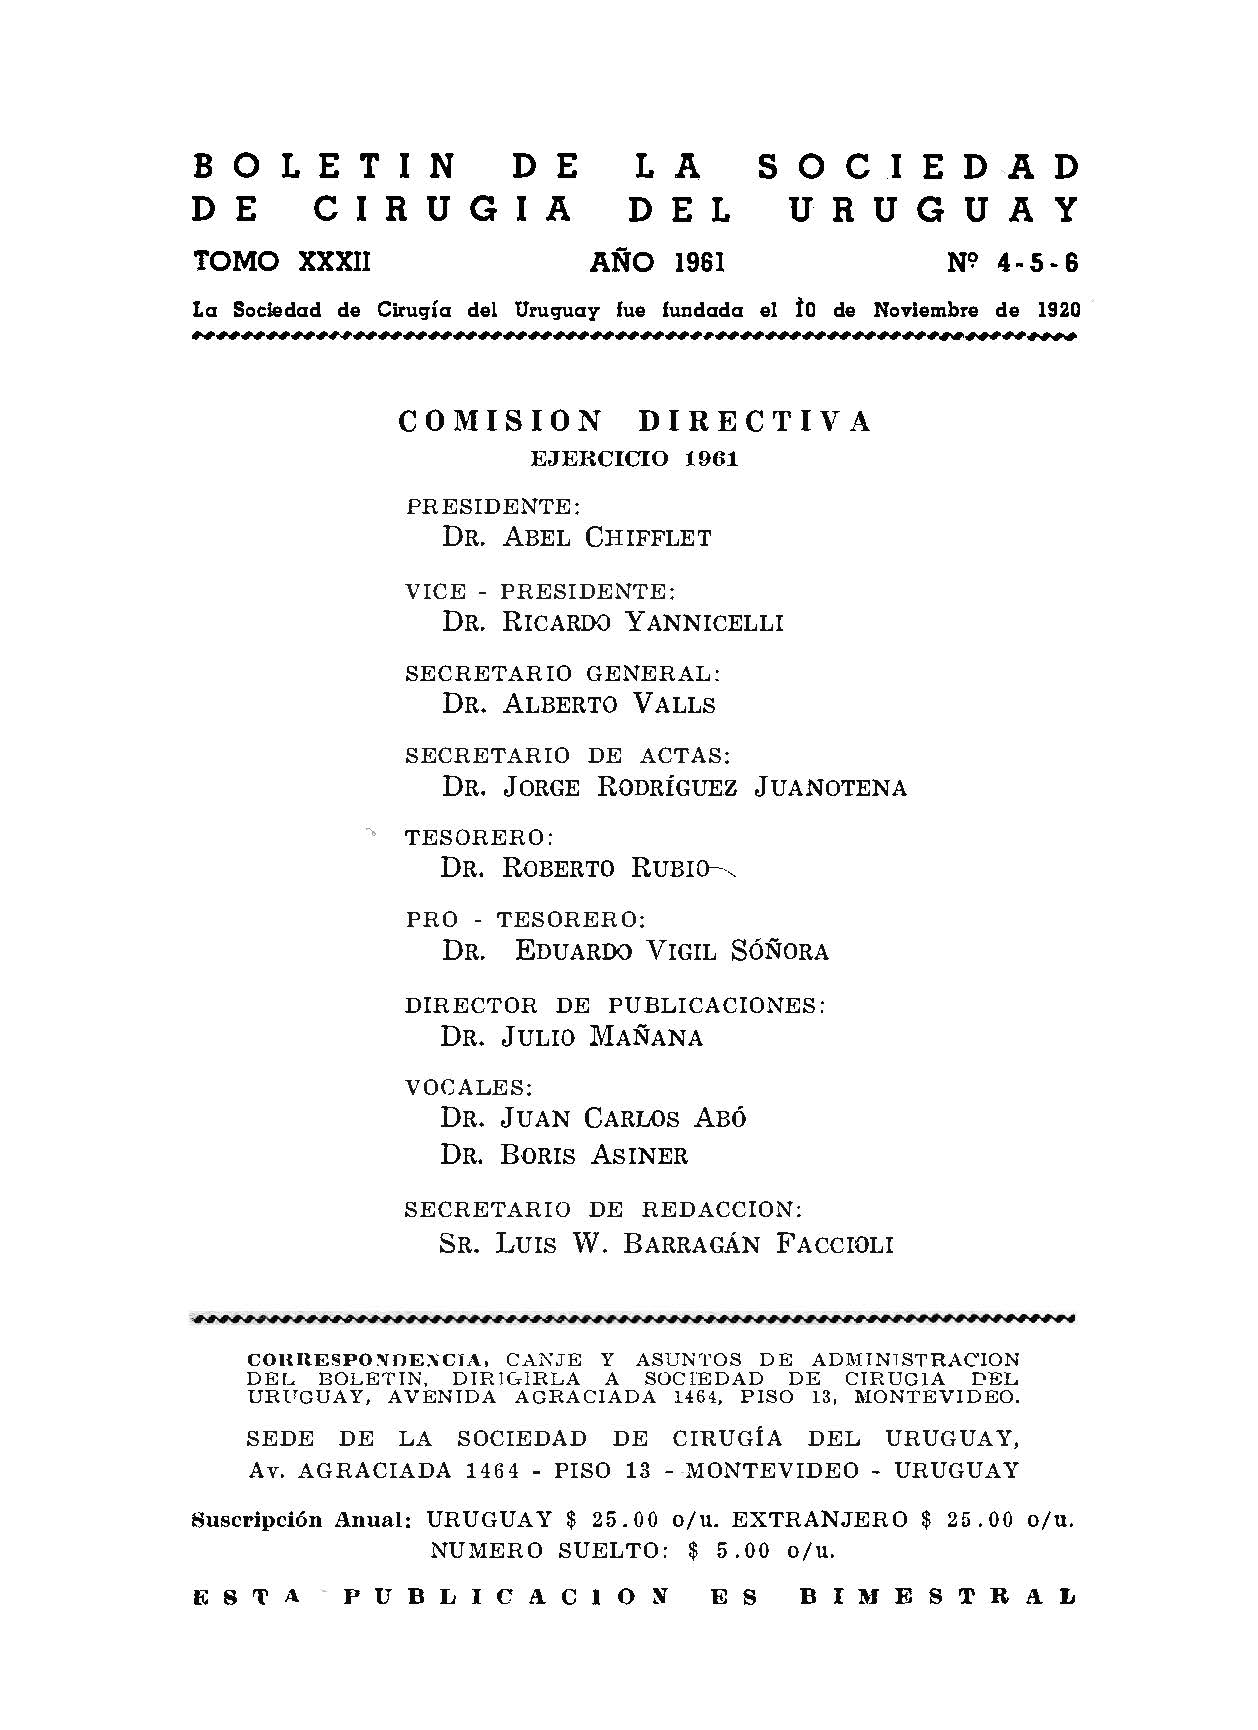 					Ver Vol. 32 Núm. 4-5-6 (1961): Boletín de la Sociedad de Cirugía del Uruguay
				